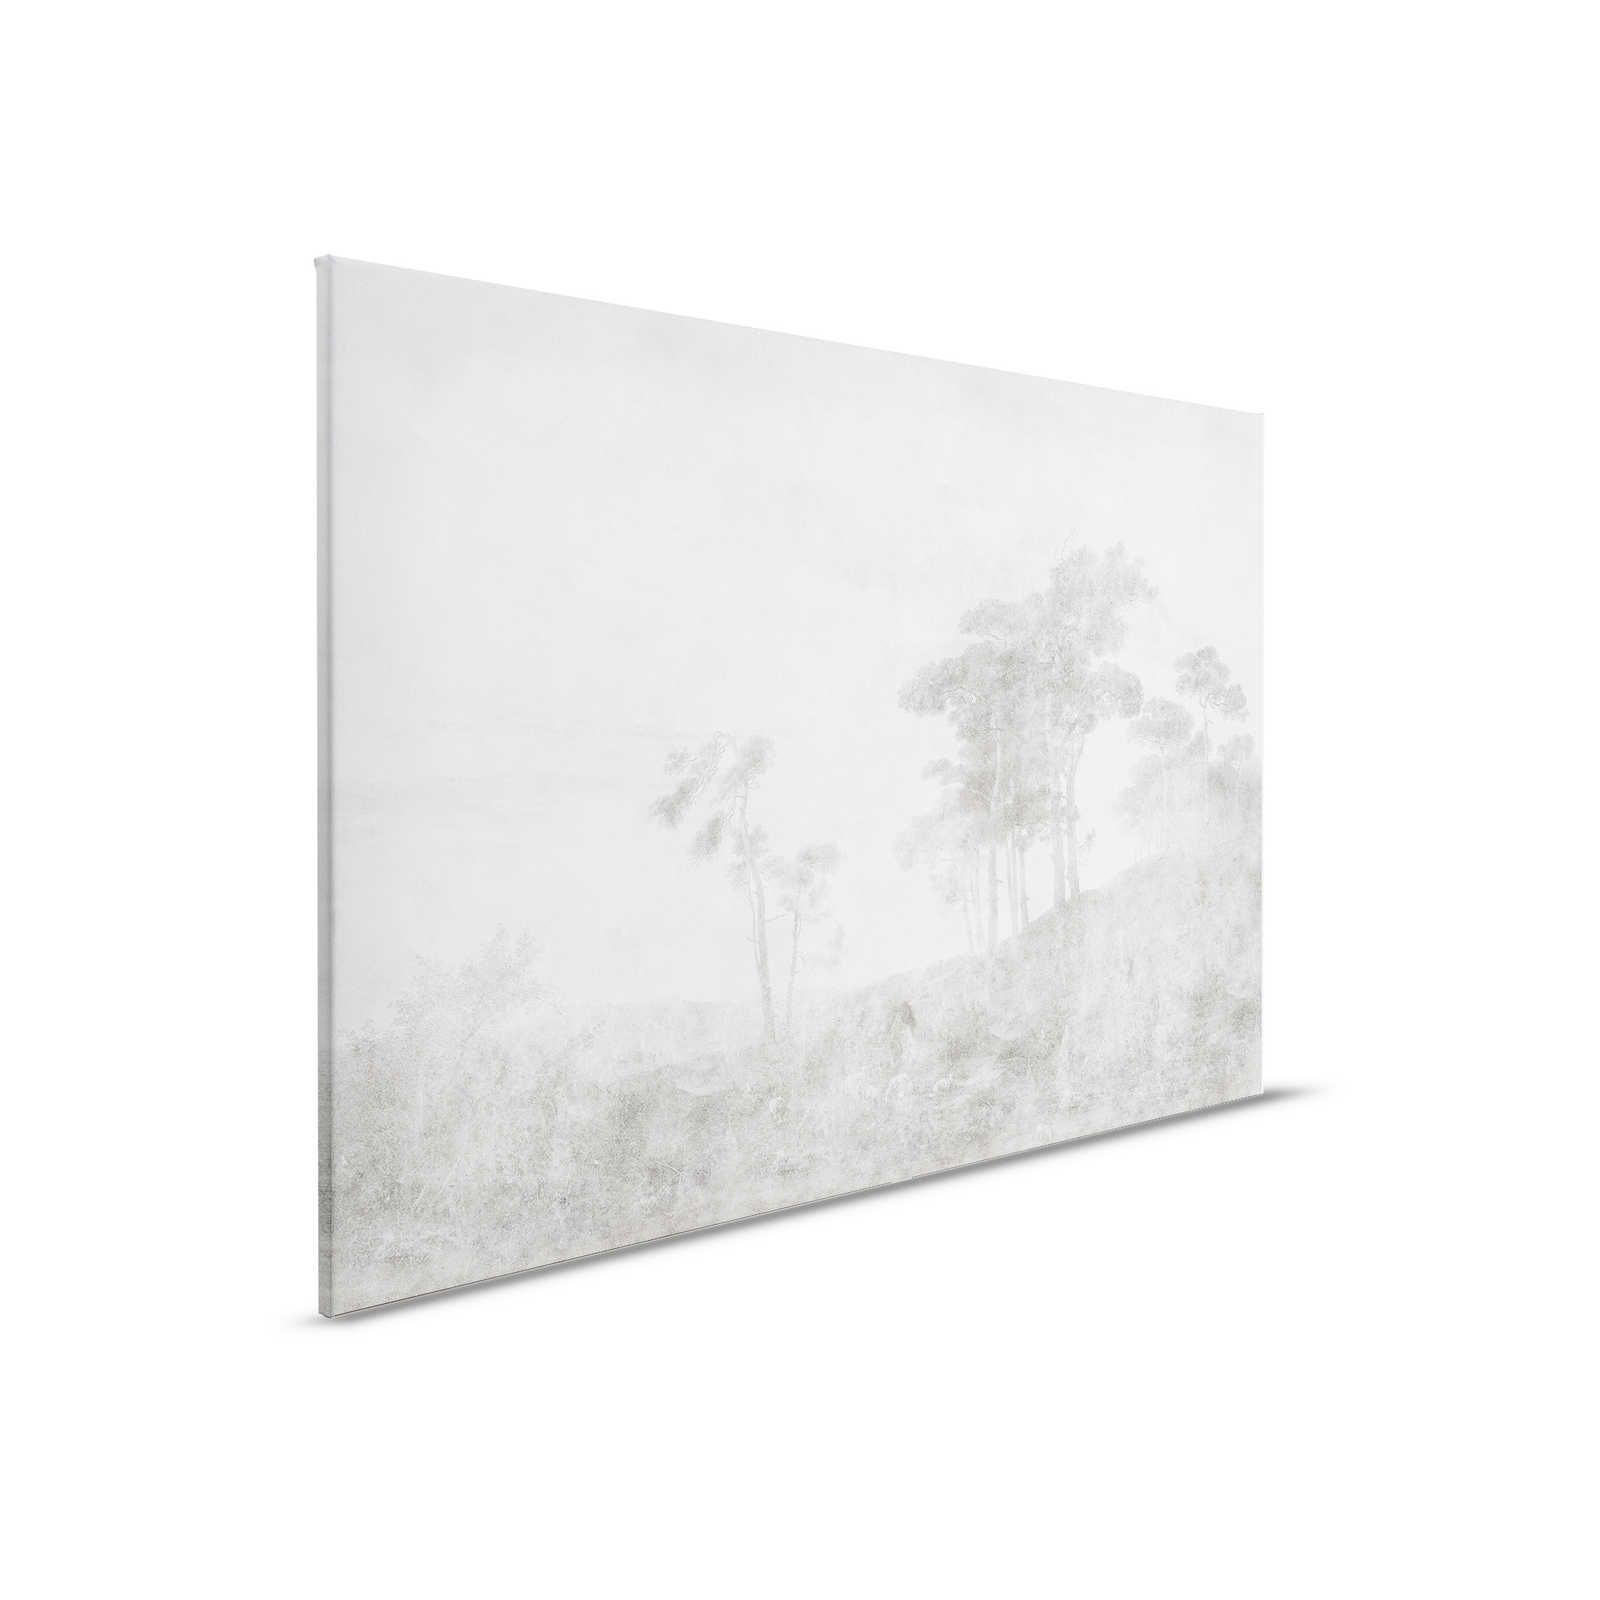 Romantic Grove 2 - Landschap Canvas Schilderij Vintage Stijl - 0,90 m x 0,60 m
